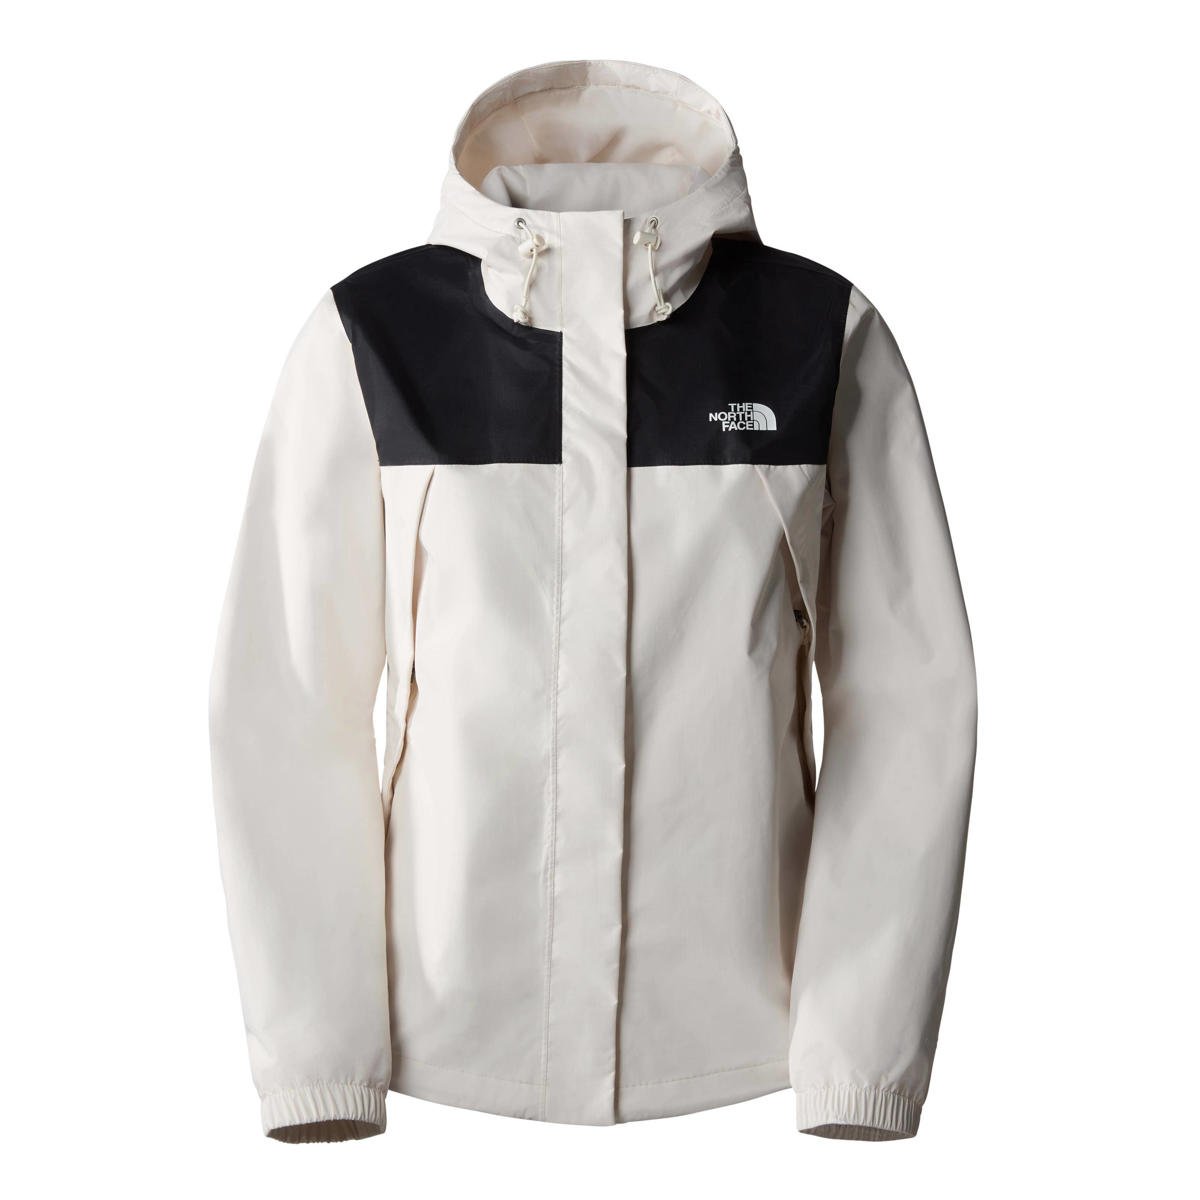 overzee Antecedent wekelijks The North Face outdoor jas Antora wit/zwart | wehkamp